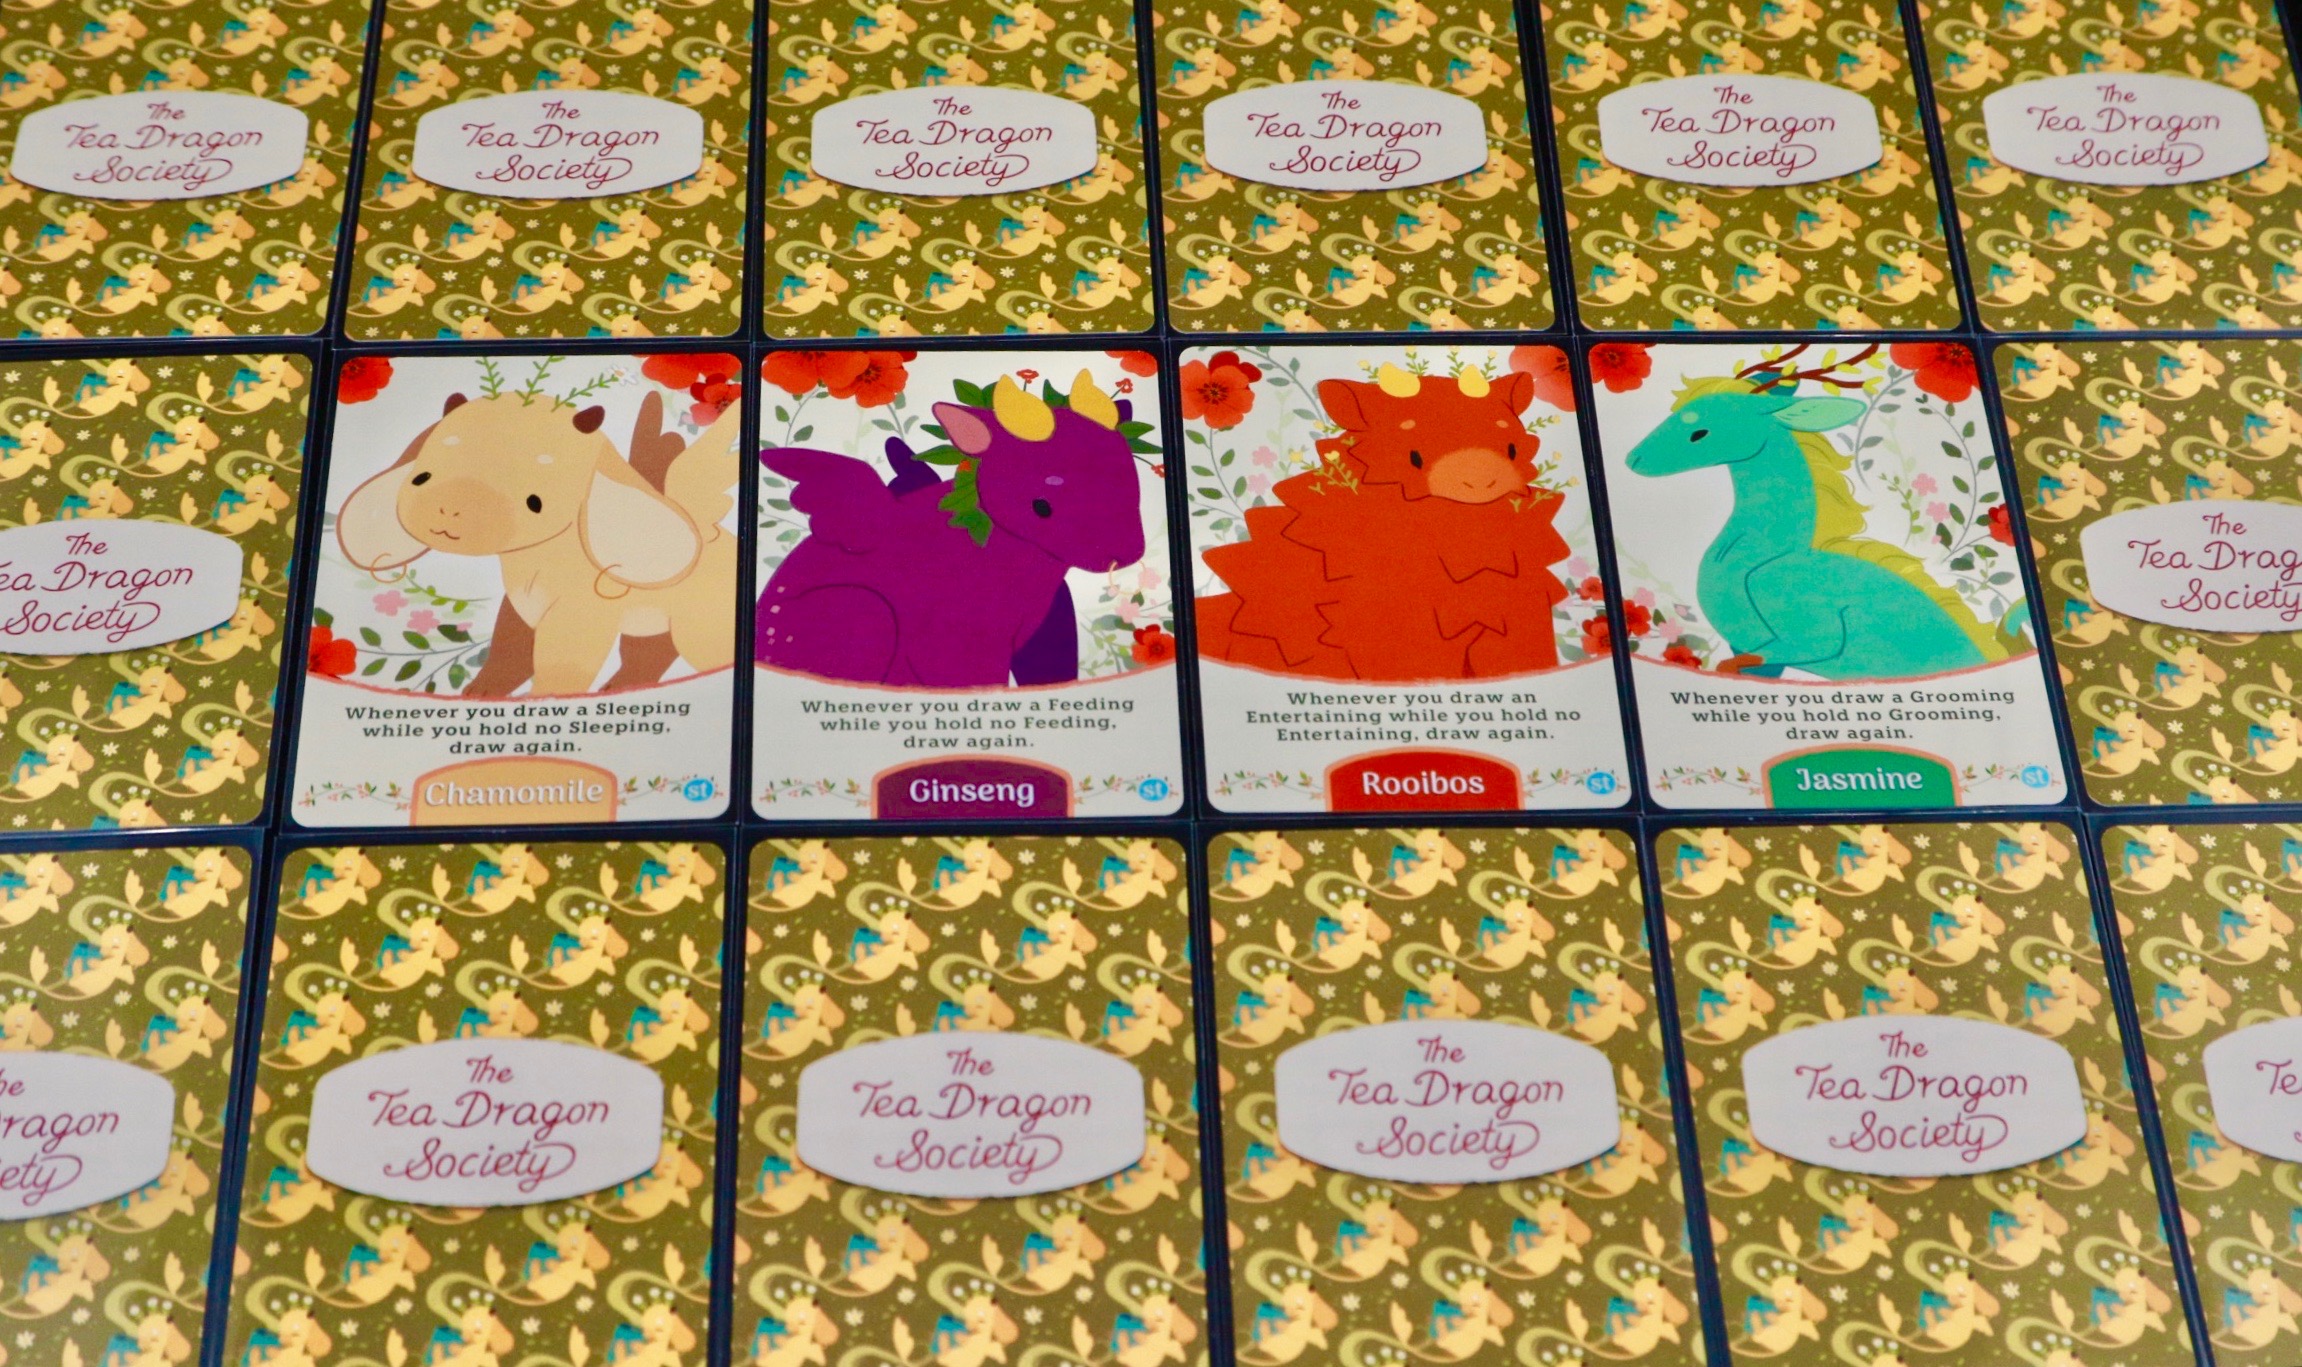 The Tea Dragon Society Card Game Renegade Game Studios